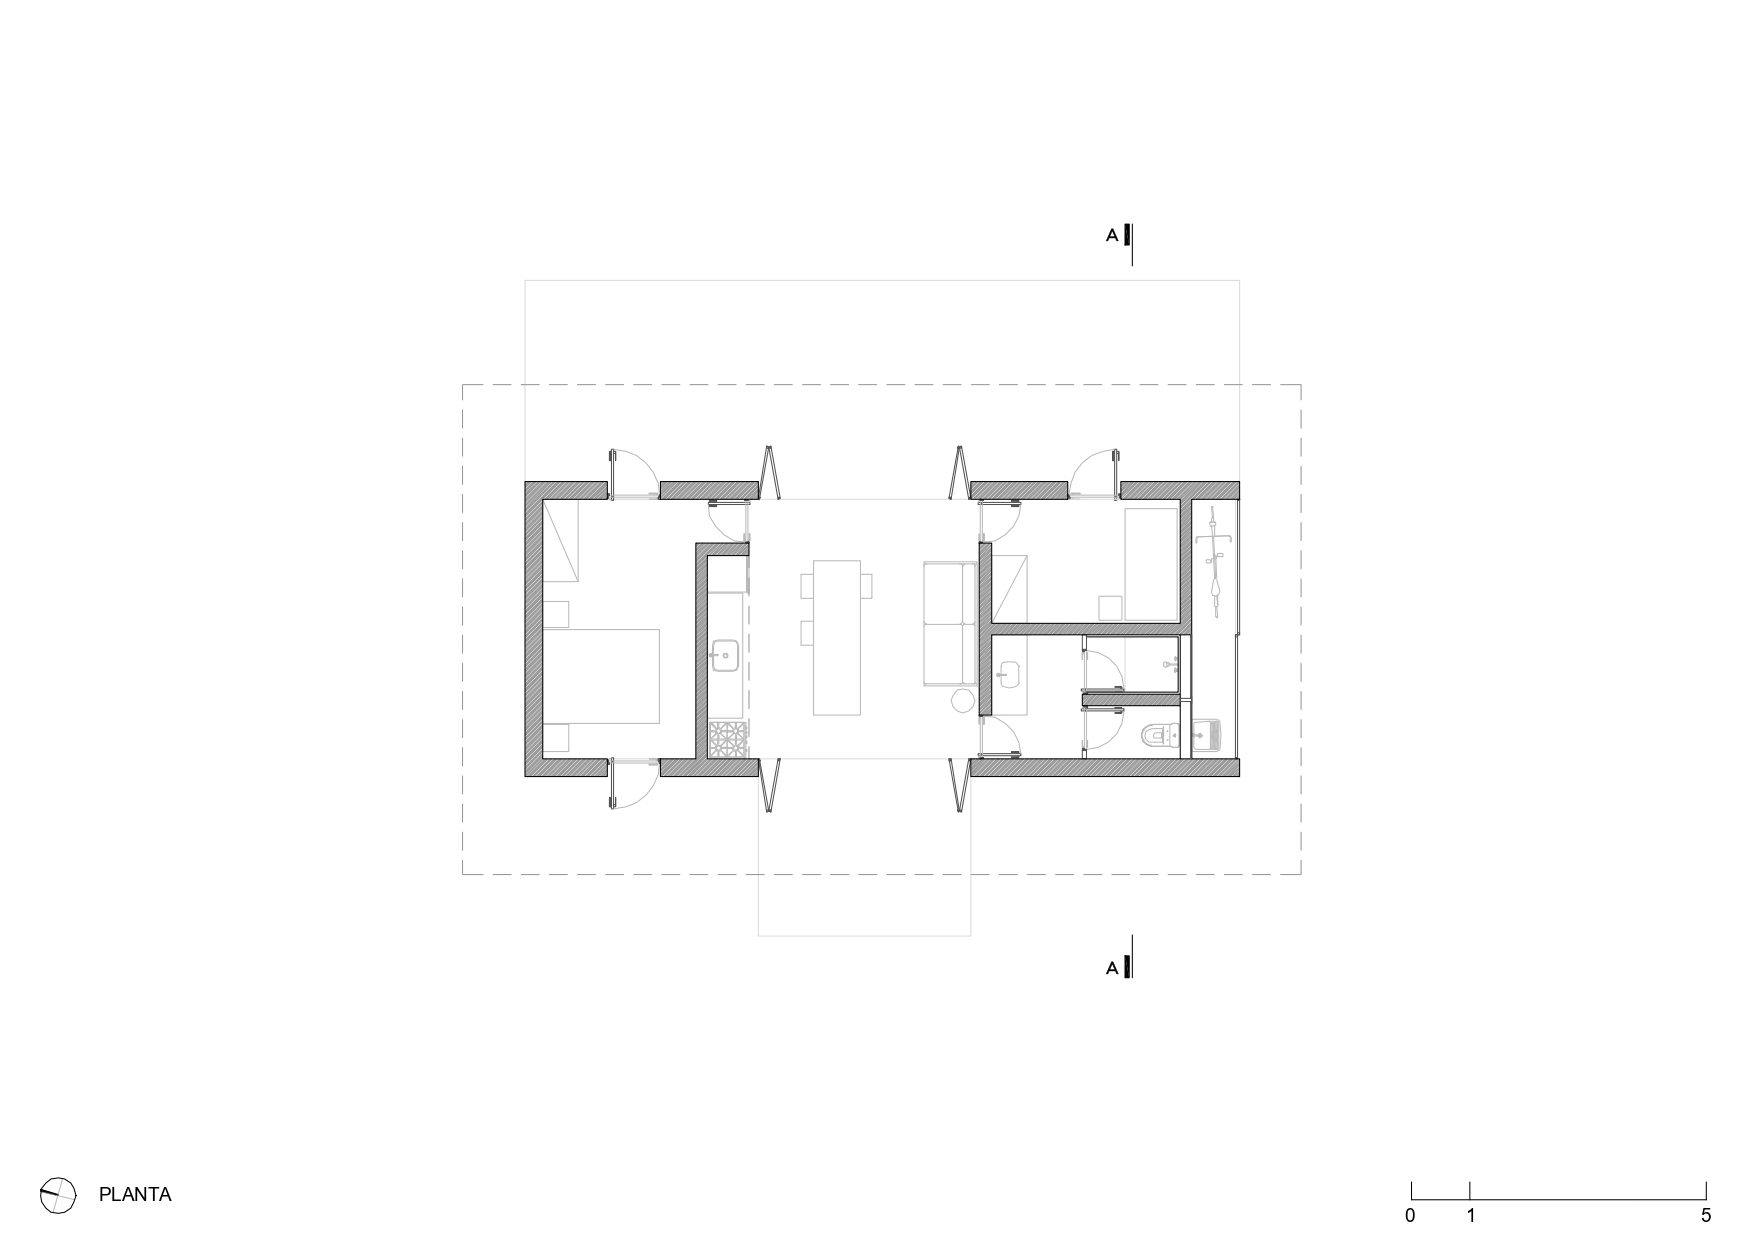 Plan drawing of Guararema House